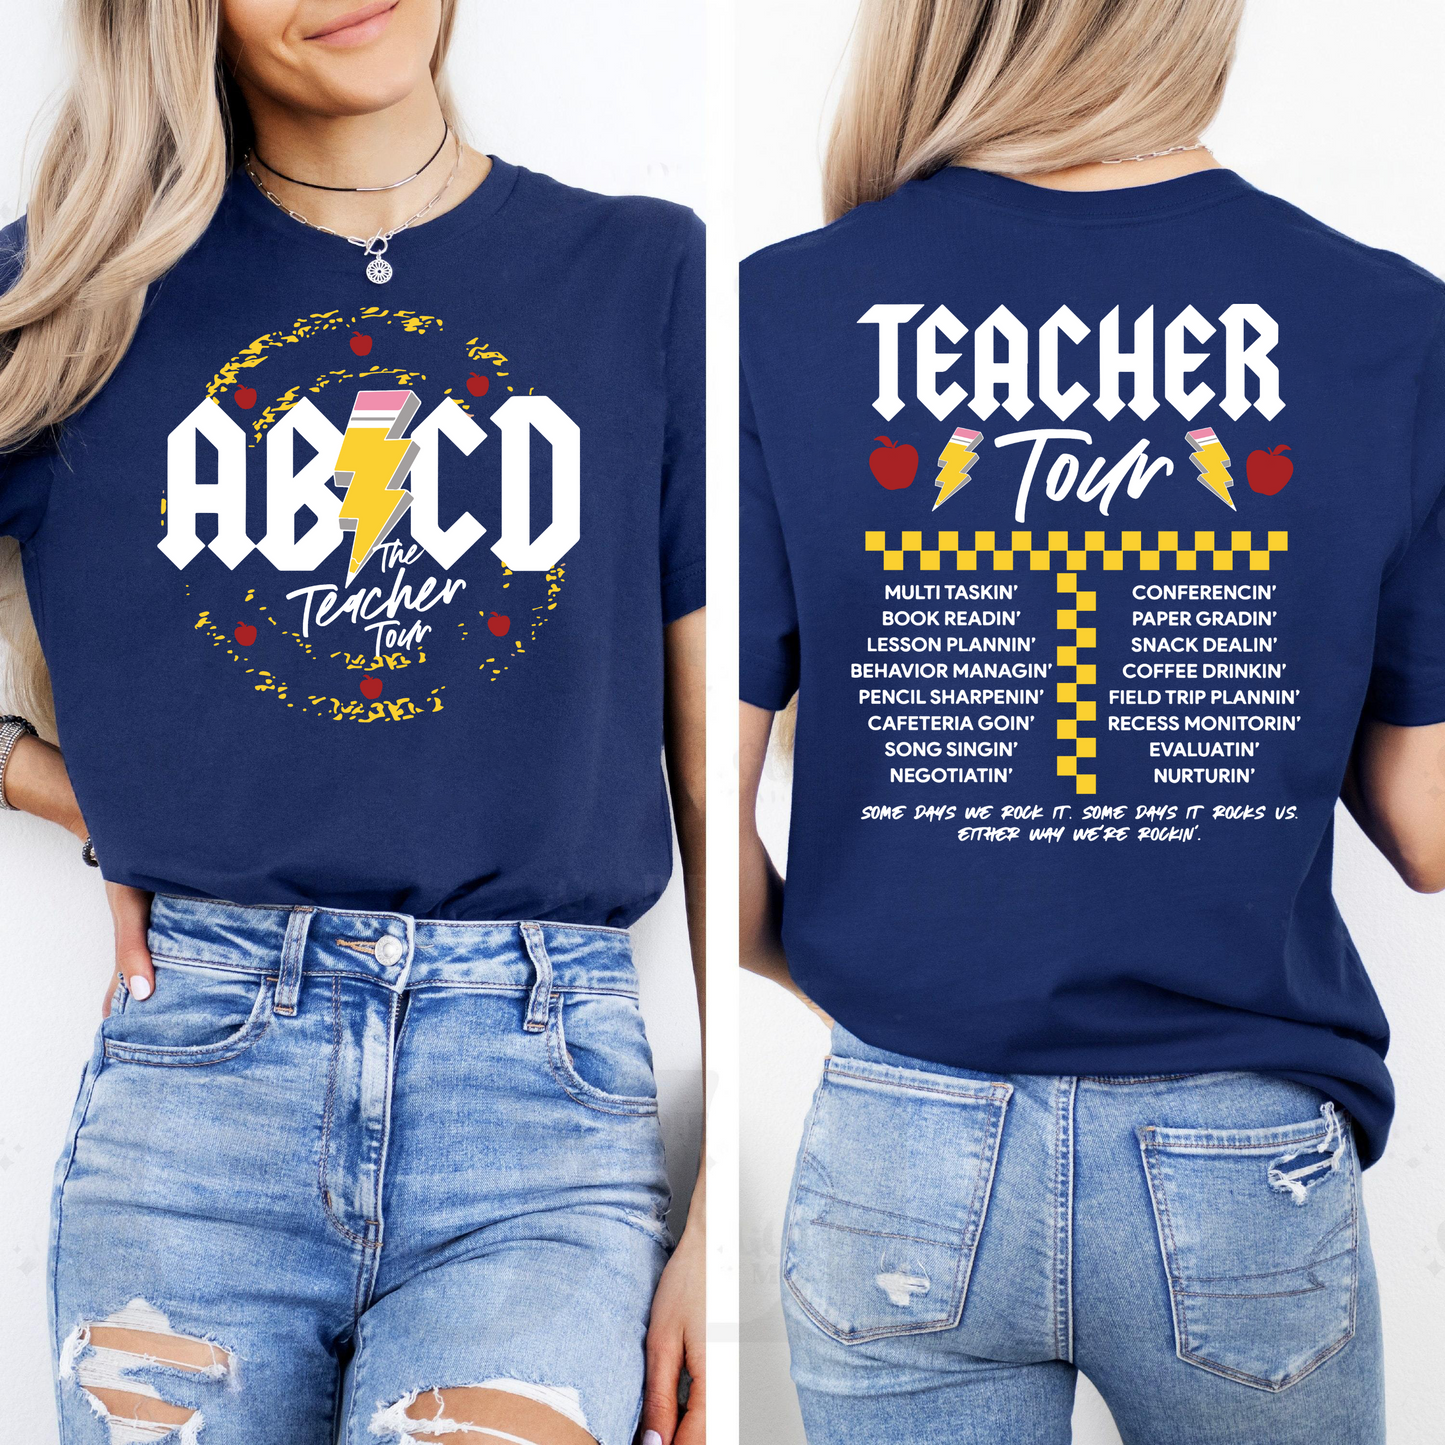 Zurück zur Schule Feier, ABCD Lehrer Tour